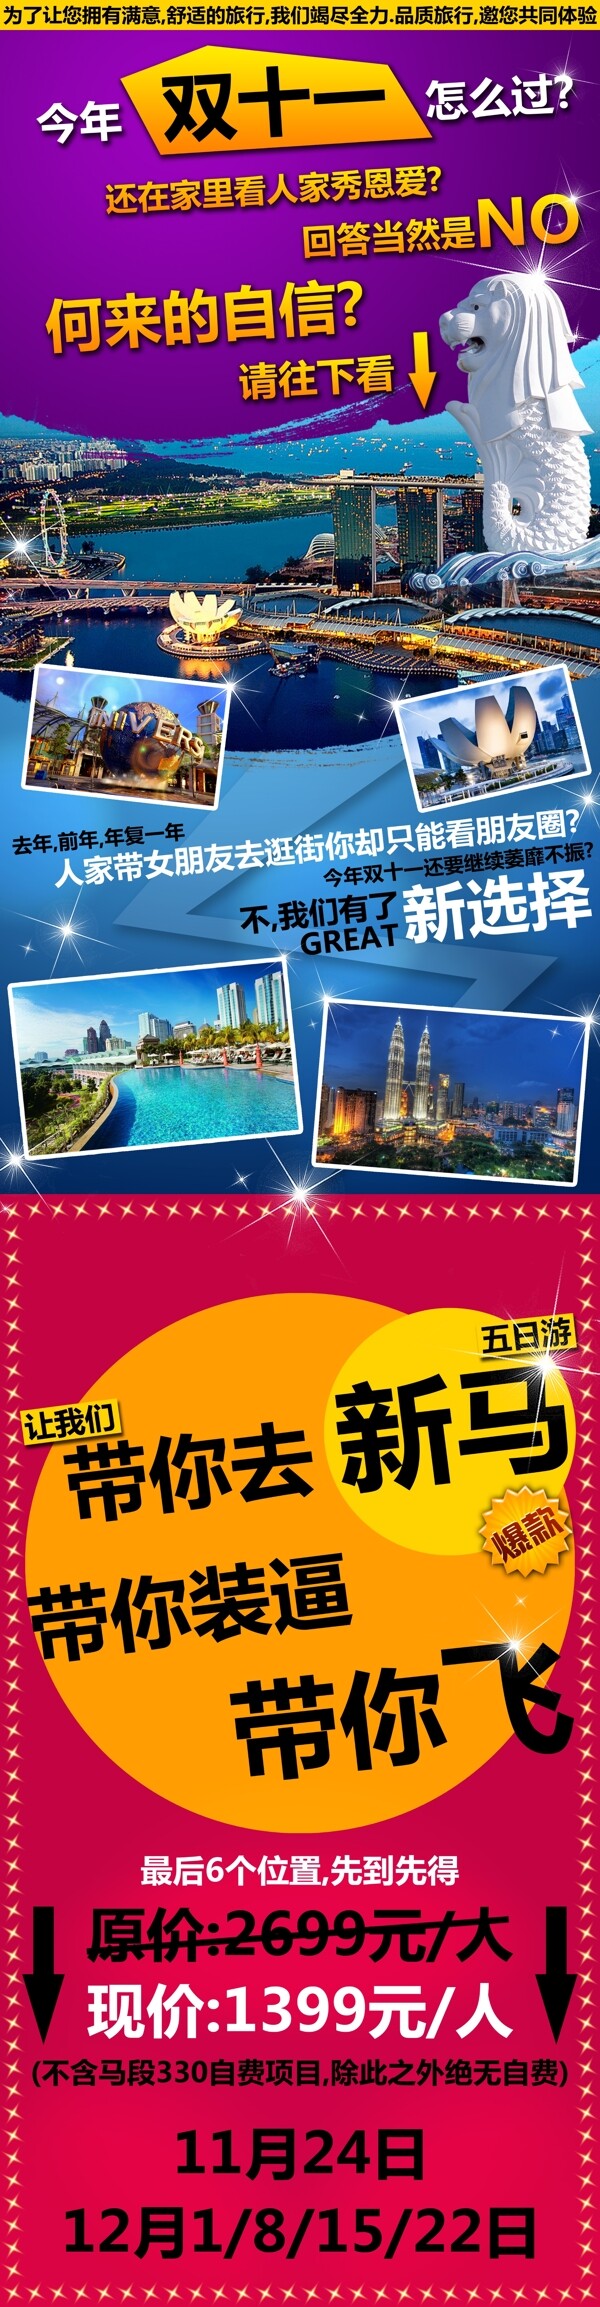 新加坡马来西亚旅游海报设计